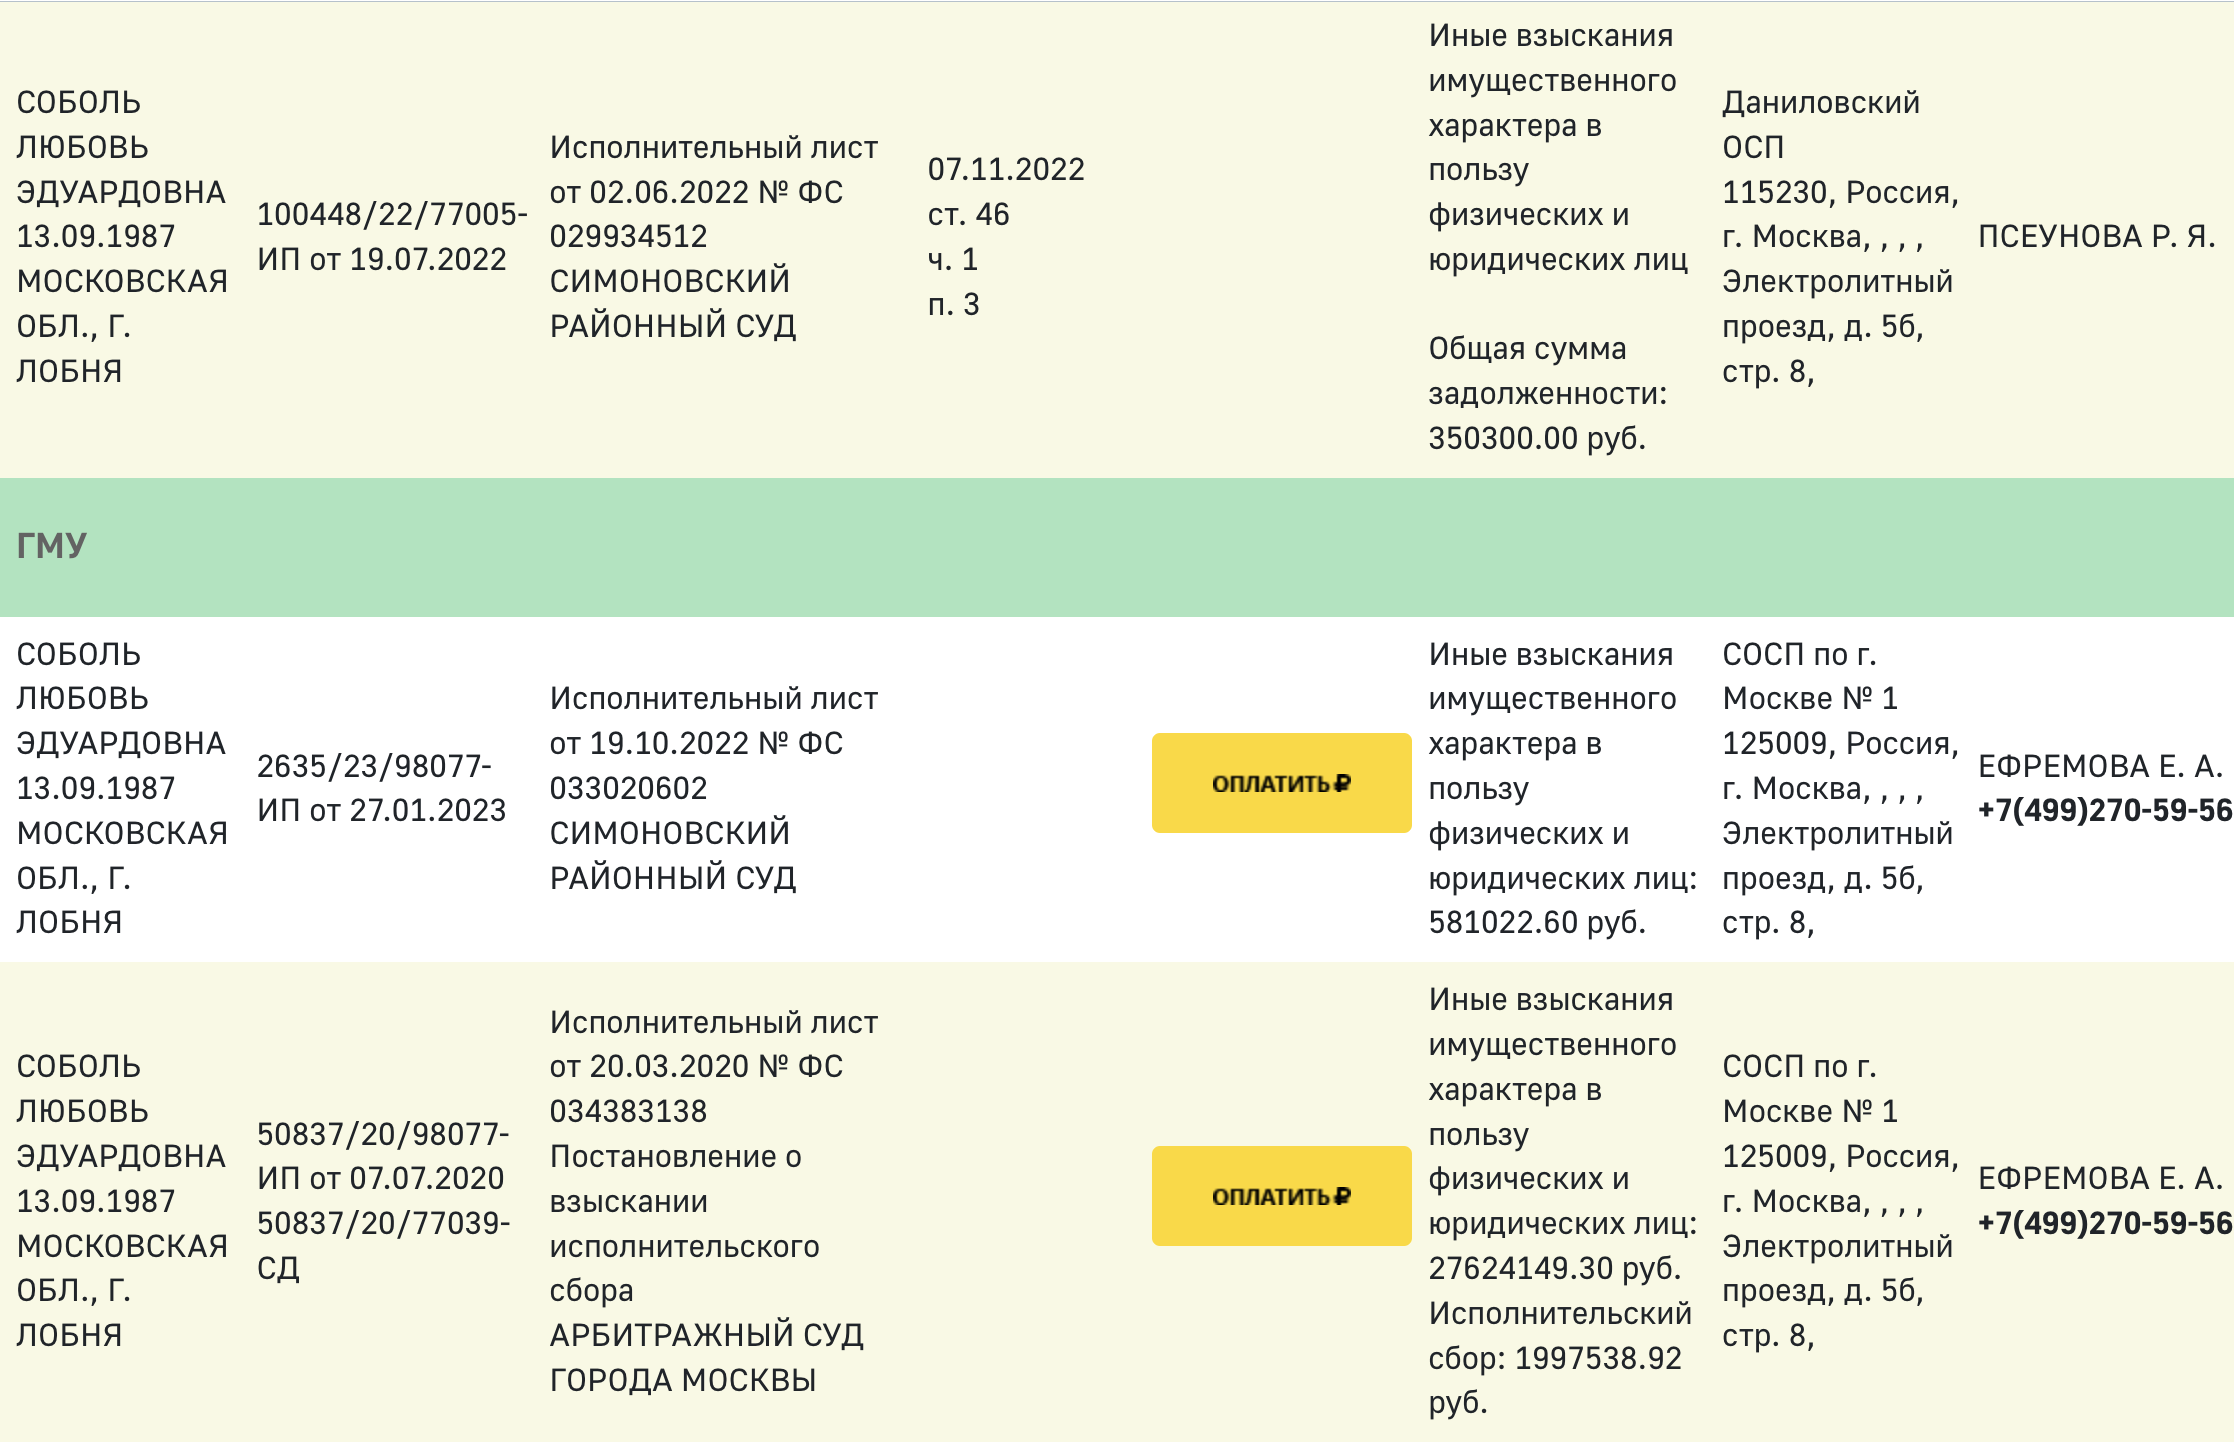 Судебные приставы открыли в отношении Соболь 15 исполнительных производств на сумму около 10 млн рублей. Скриншот © old.fssp.gov.ru